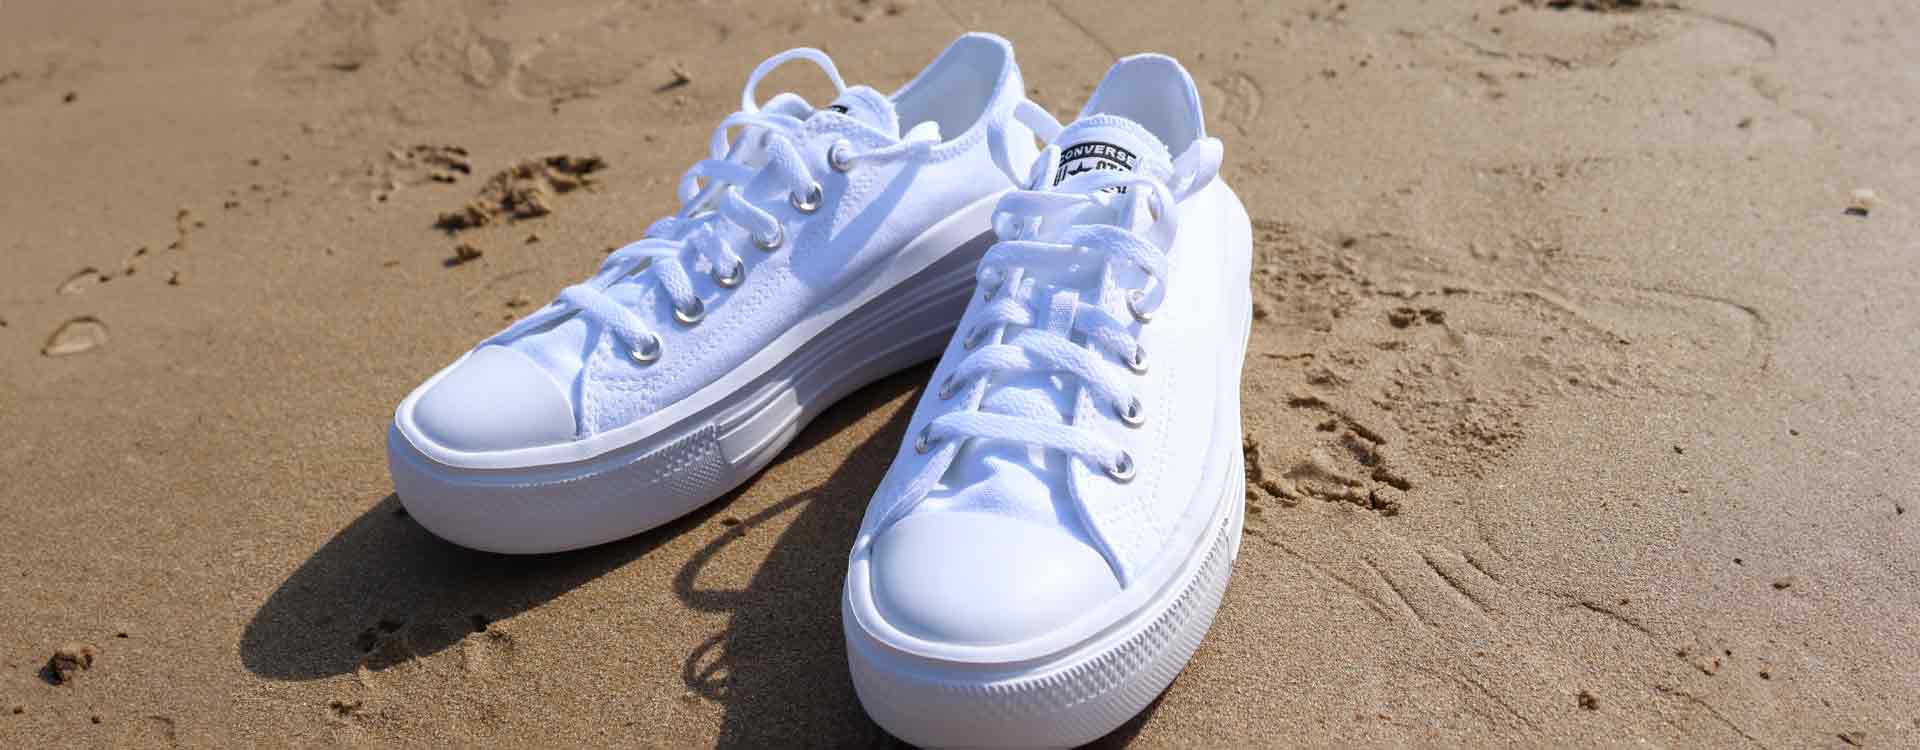 Converse-blancas-limpieza-de-sneakers